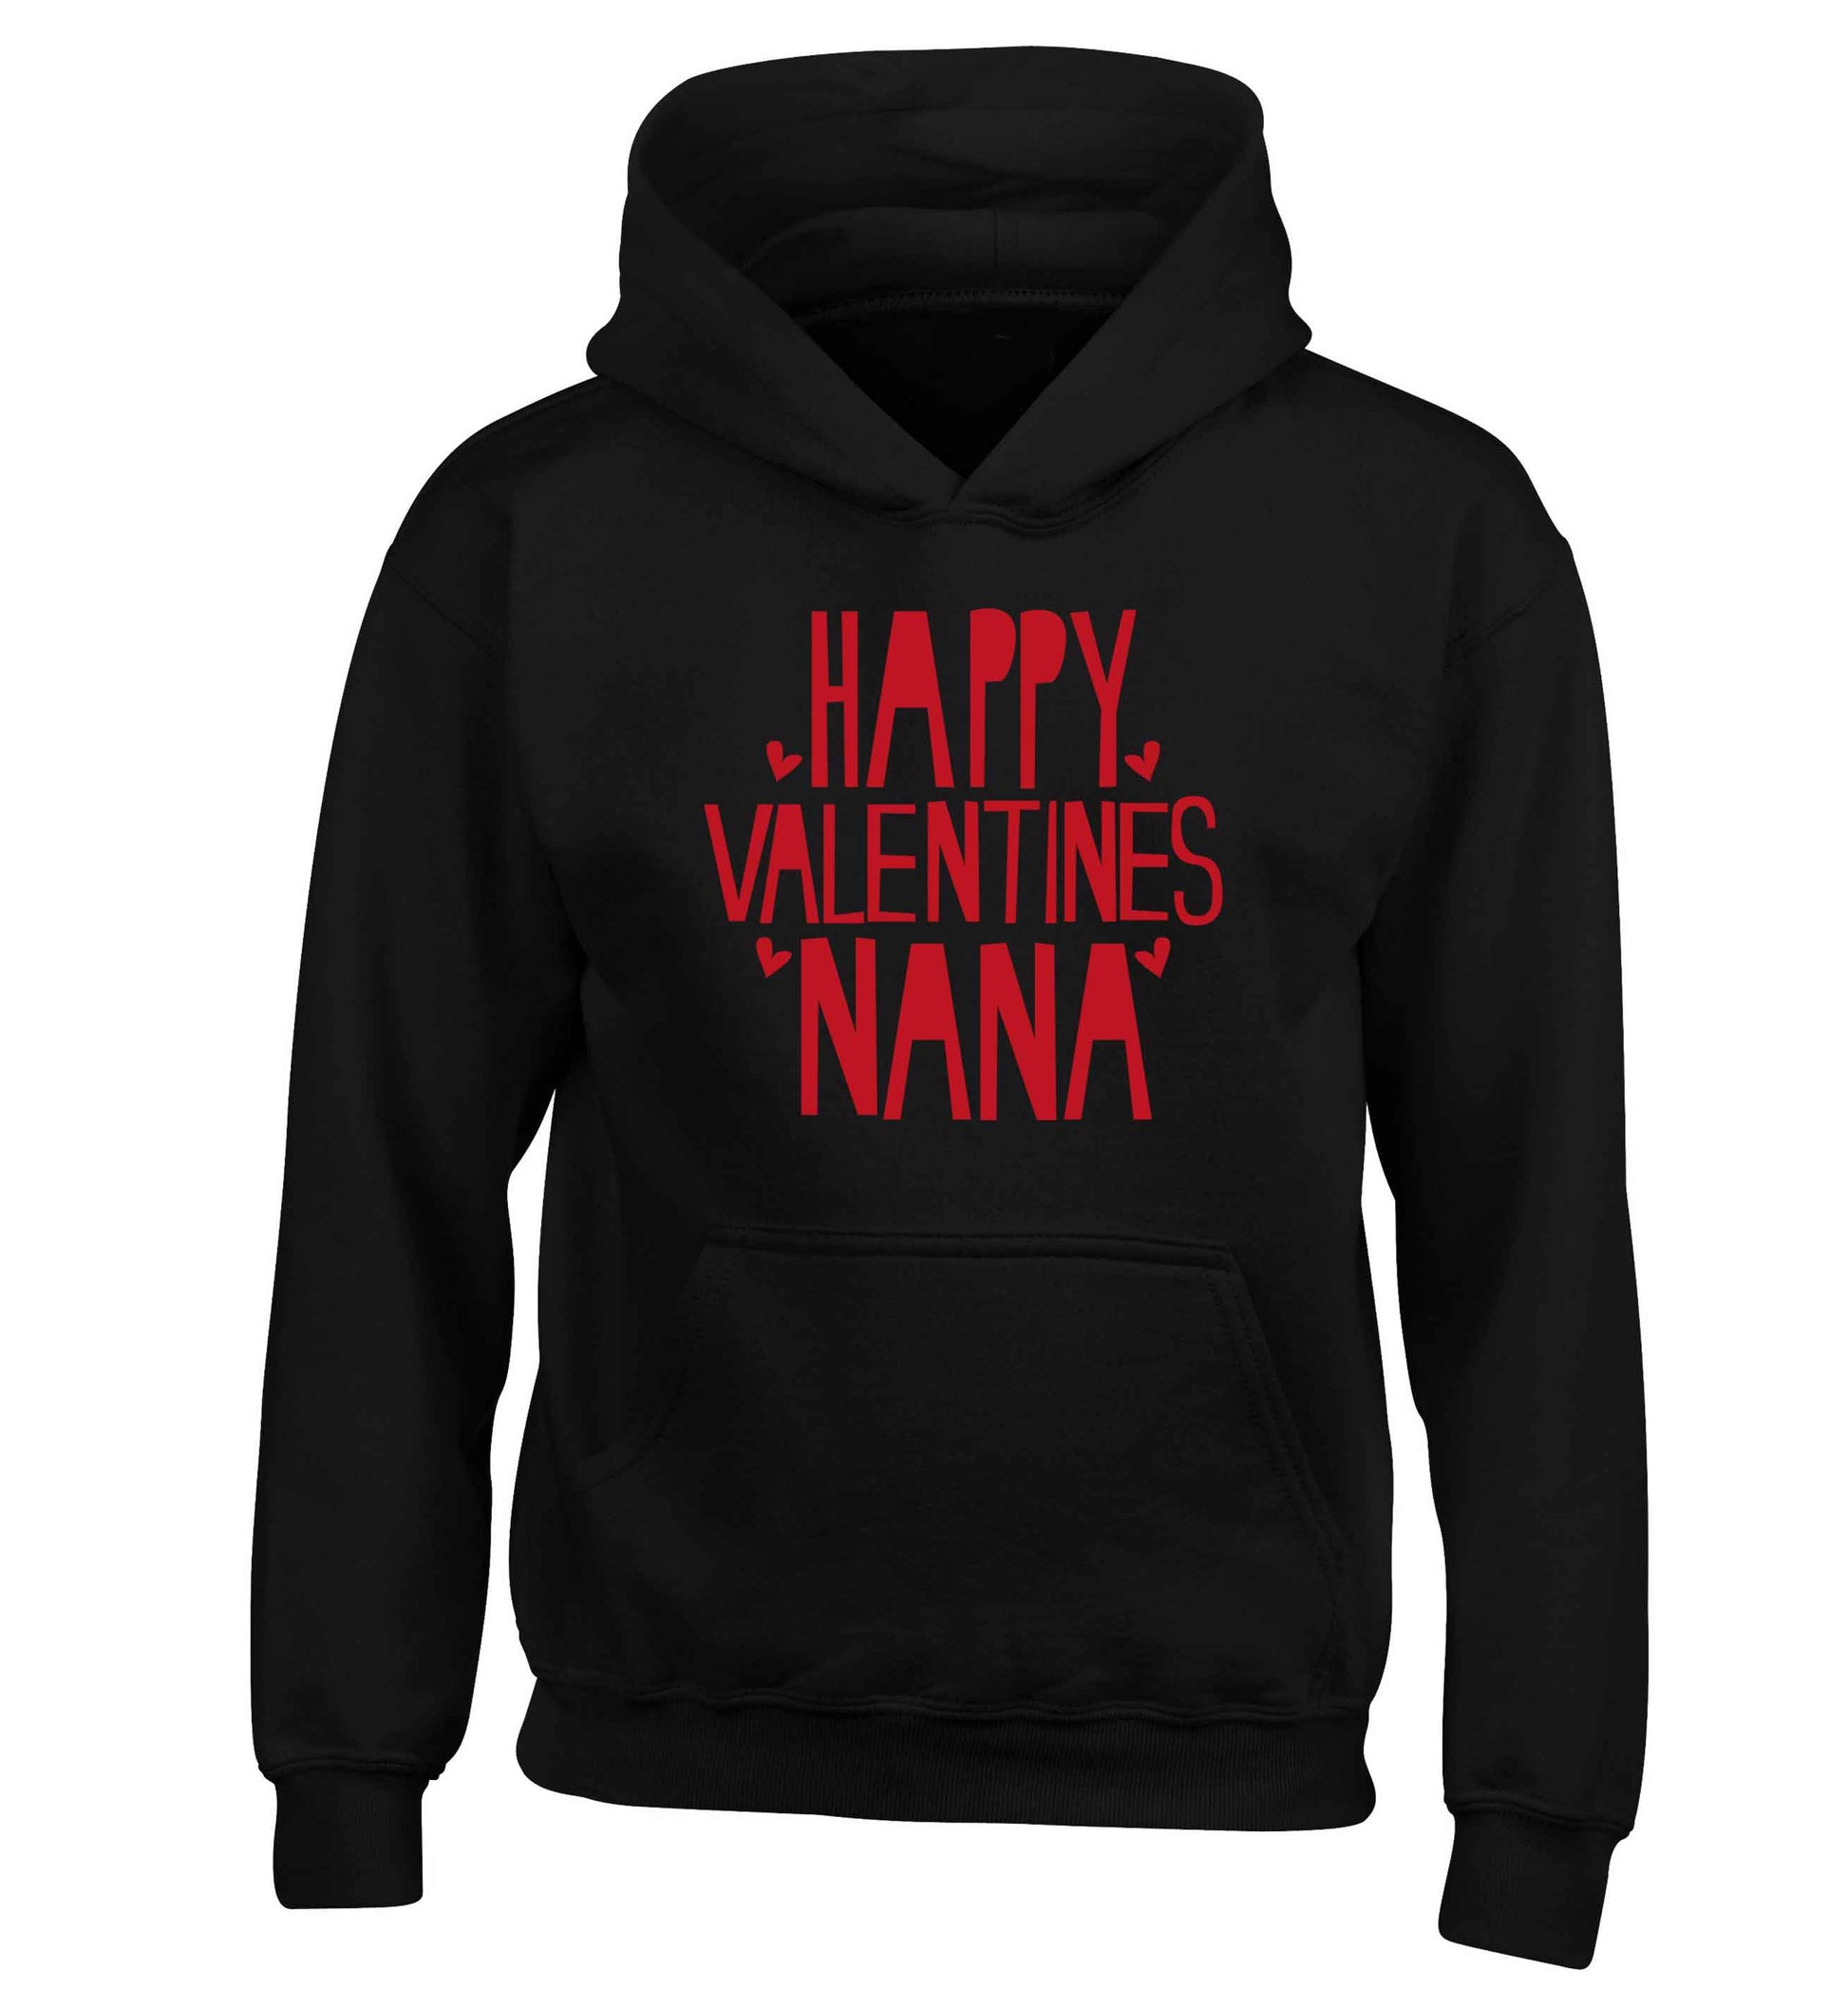 Happy valentines nana children's black hoodie 12-13 Years